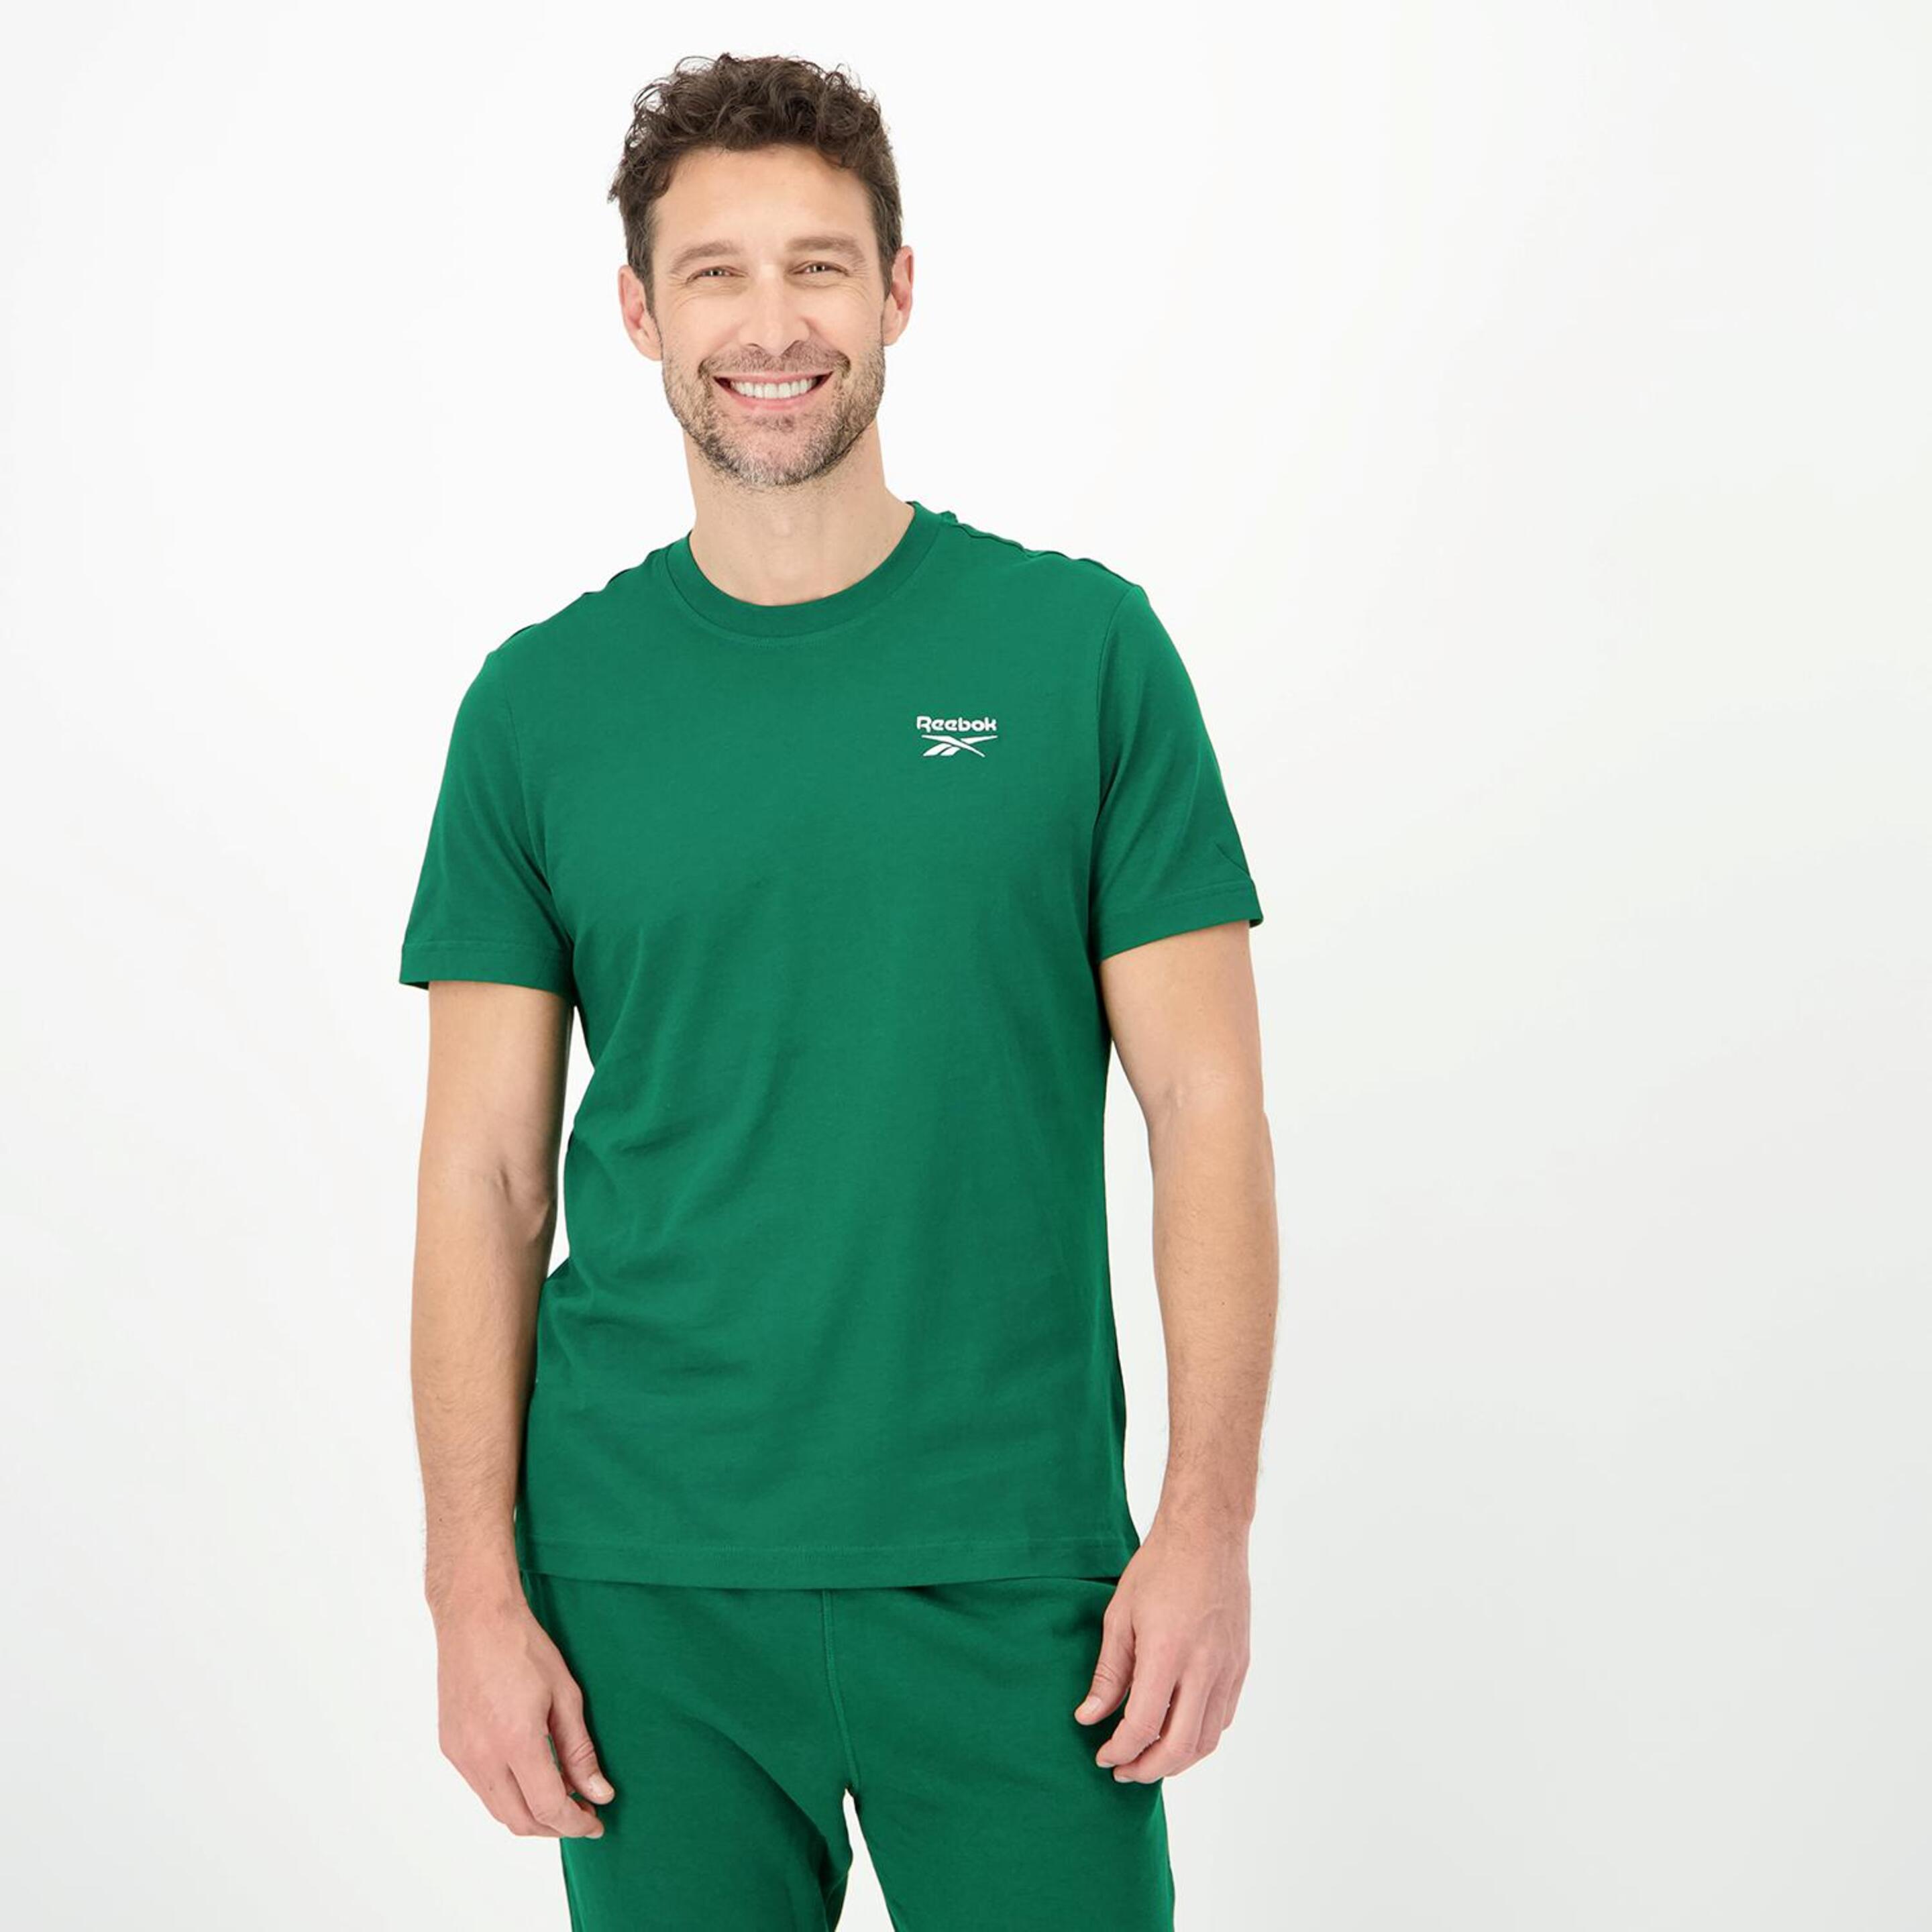 Reebok Id - verde - Camiseta Hombre